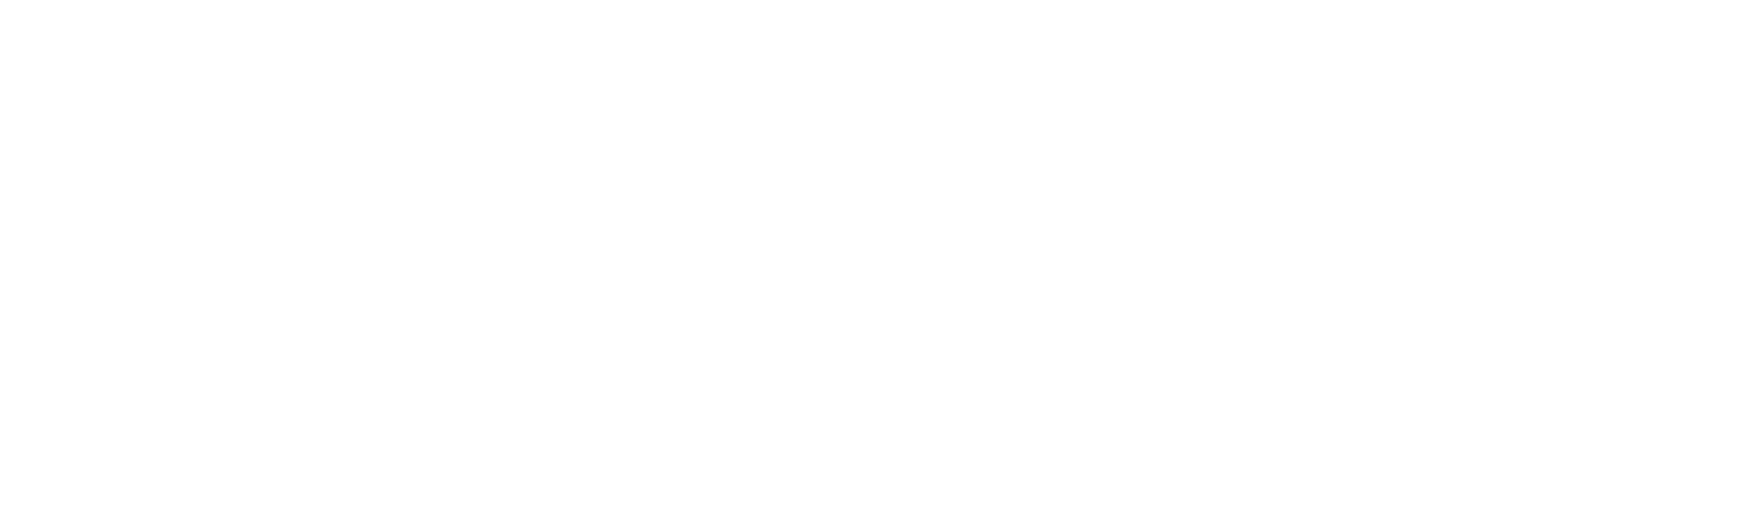 LEAP HR Main Brand Logo_WO